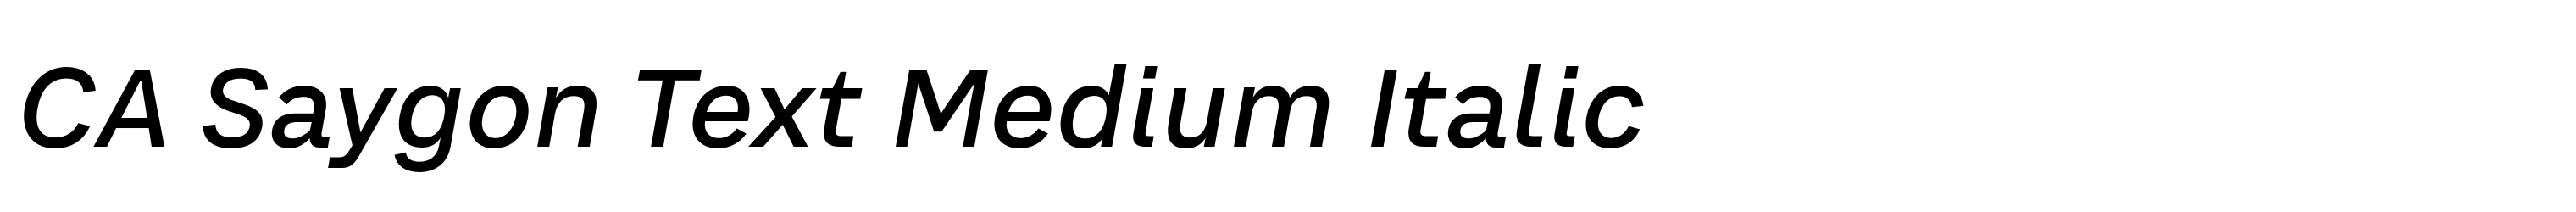 CA Saygon Text Medium Italic